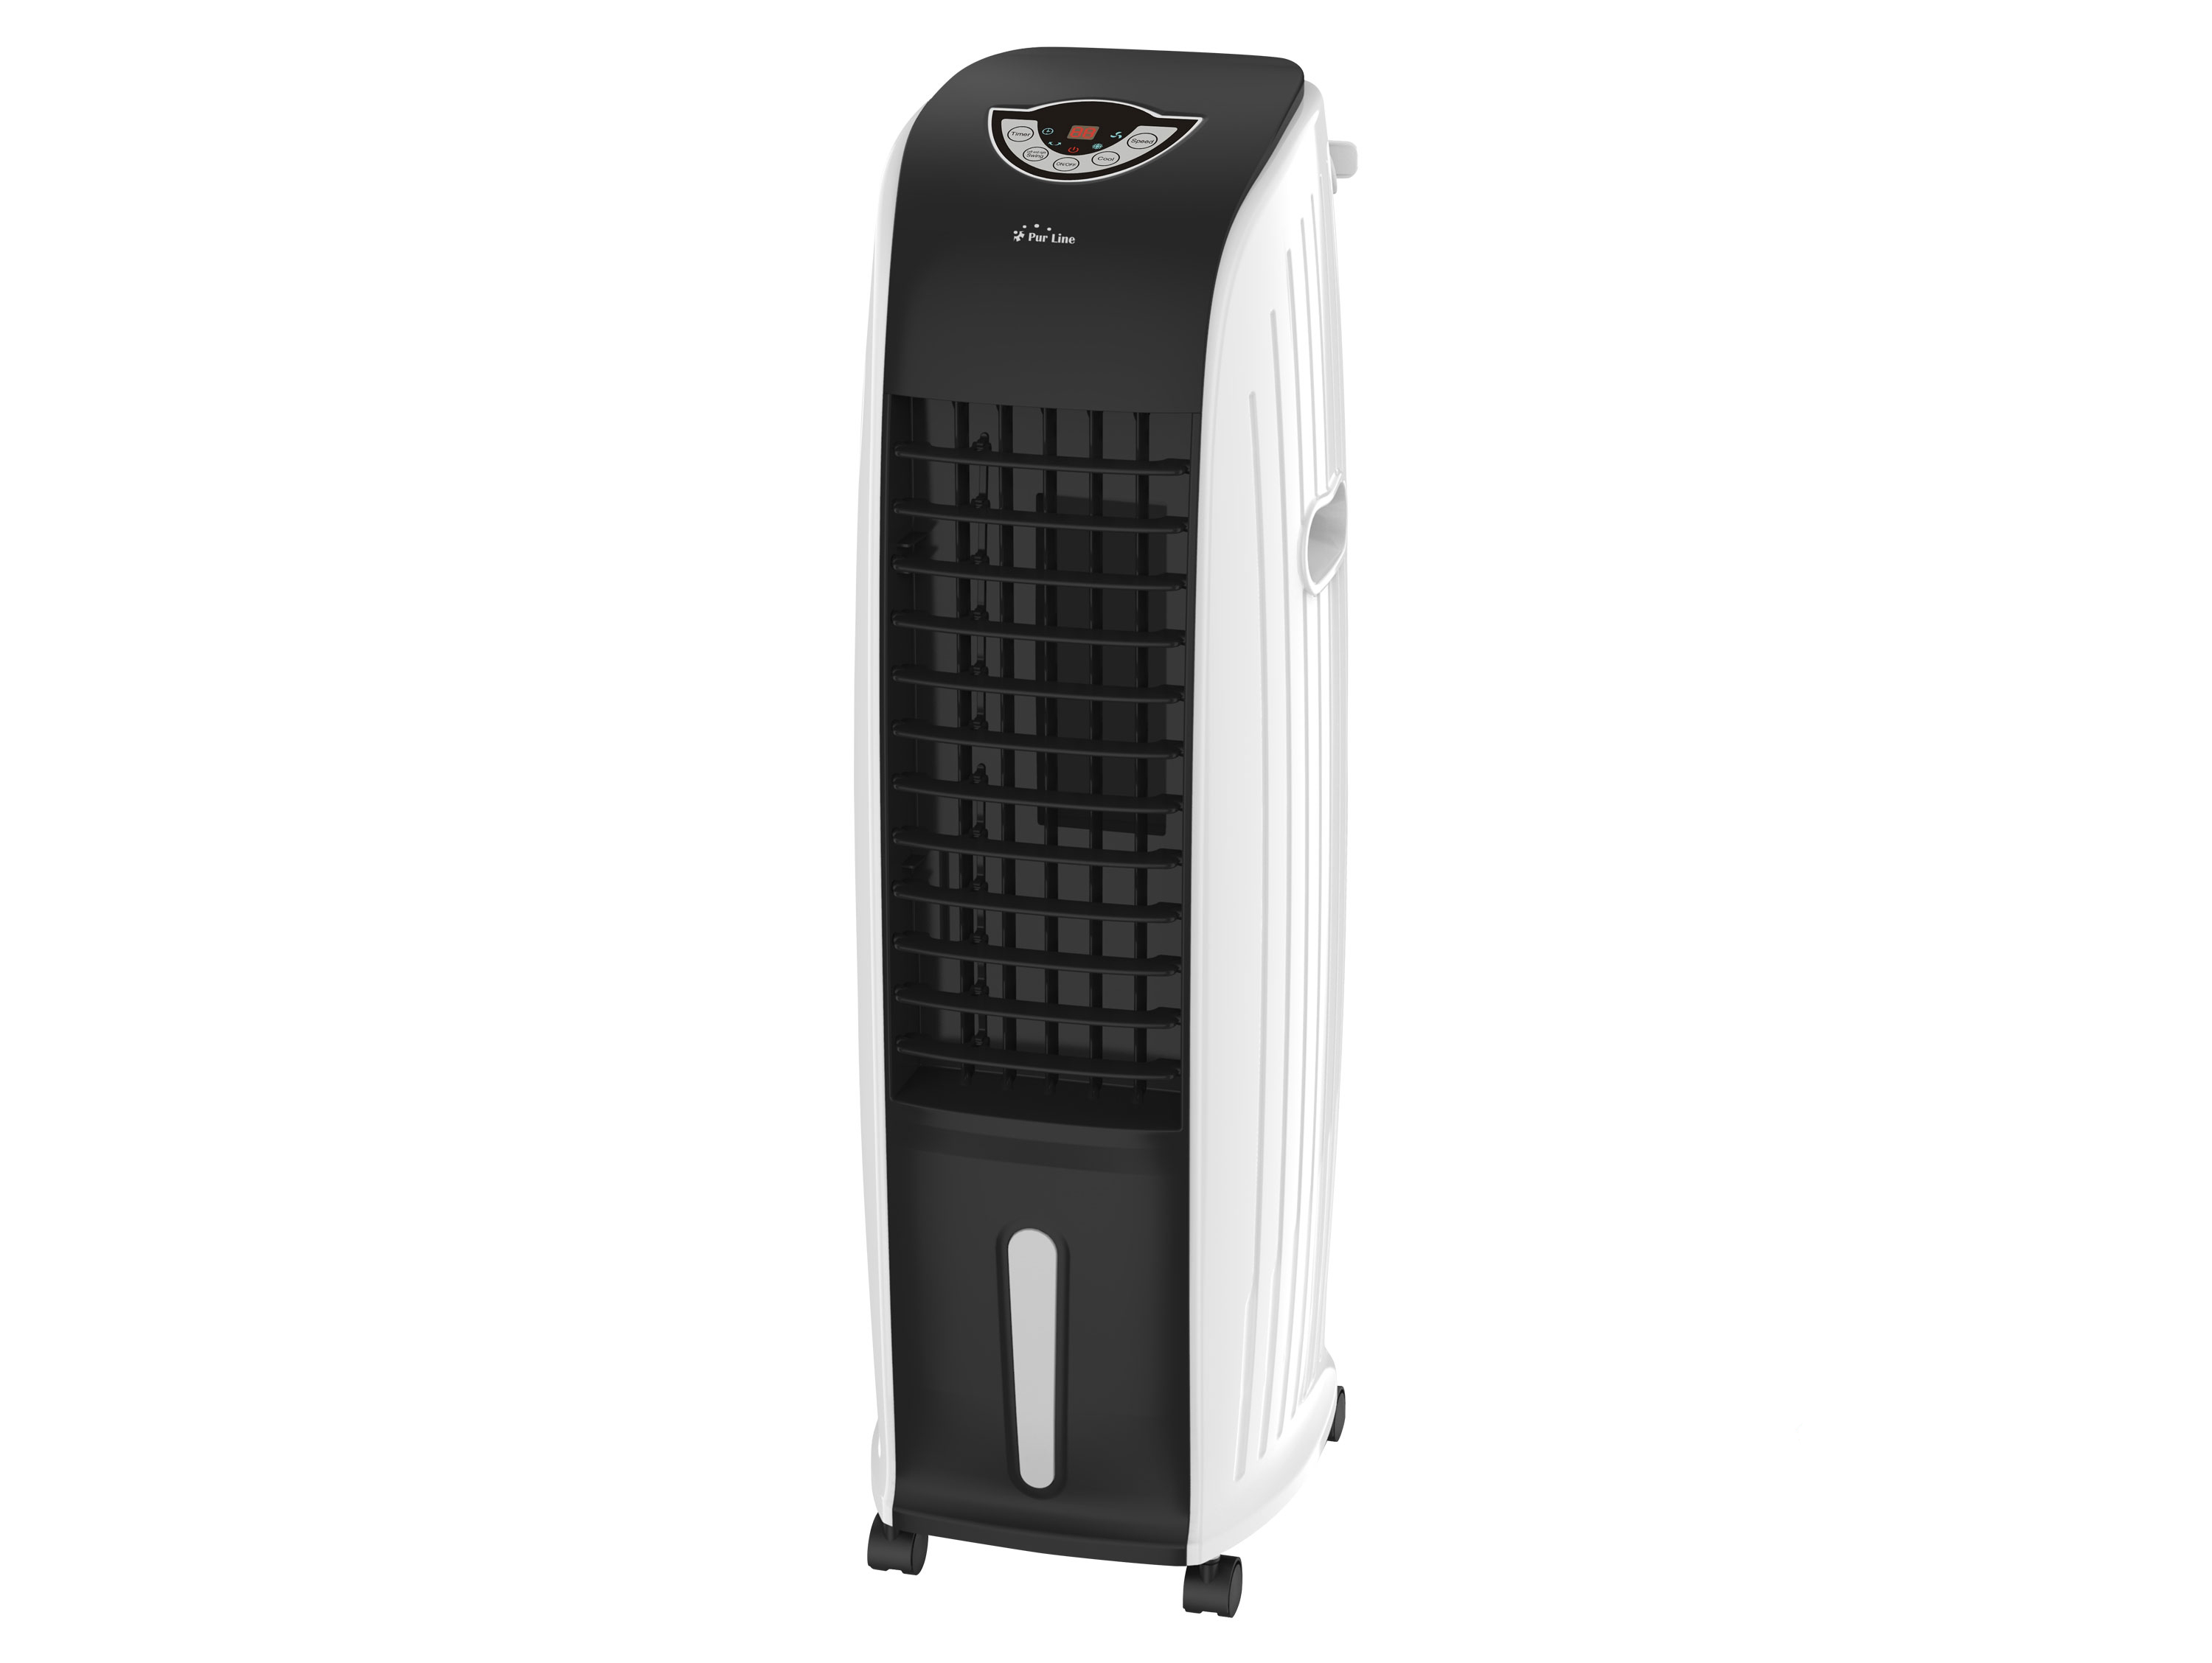 Climatizador Evaporativo Ventilador humidificador purificador de aire 70w mando distancia para superficies 18m2 purline digital bajo consumo 70 oscilación y 97